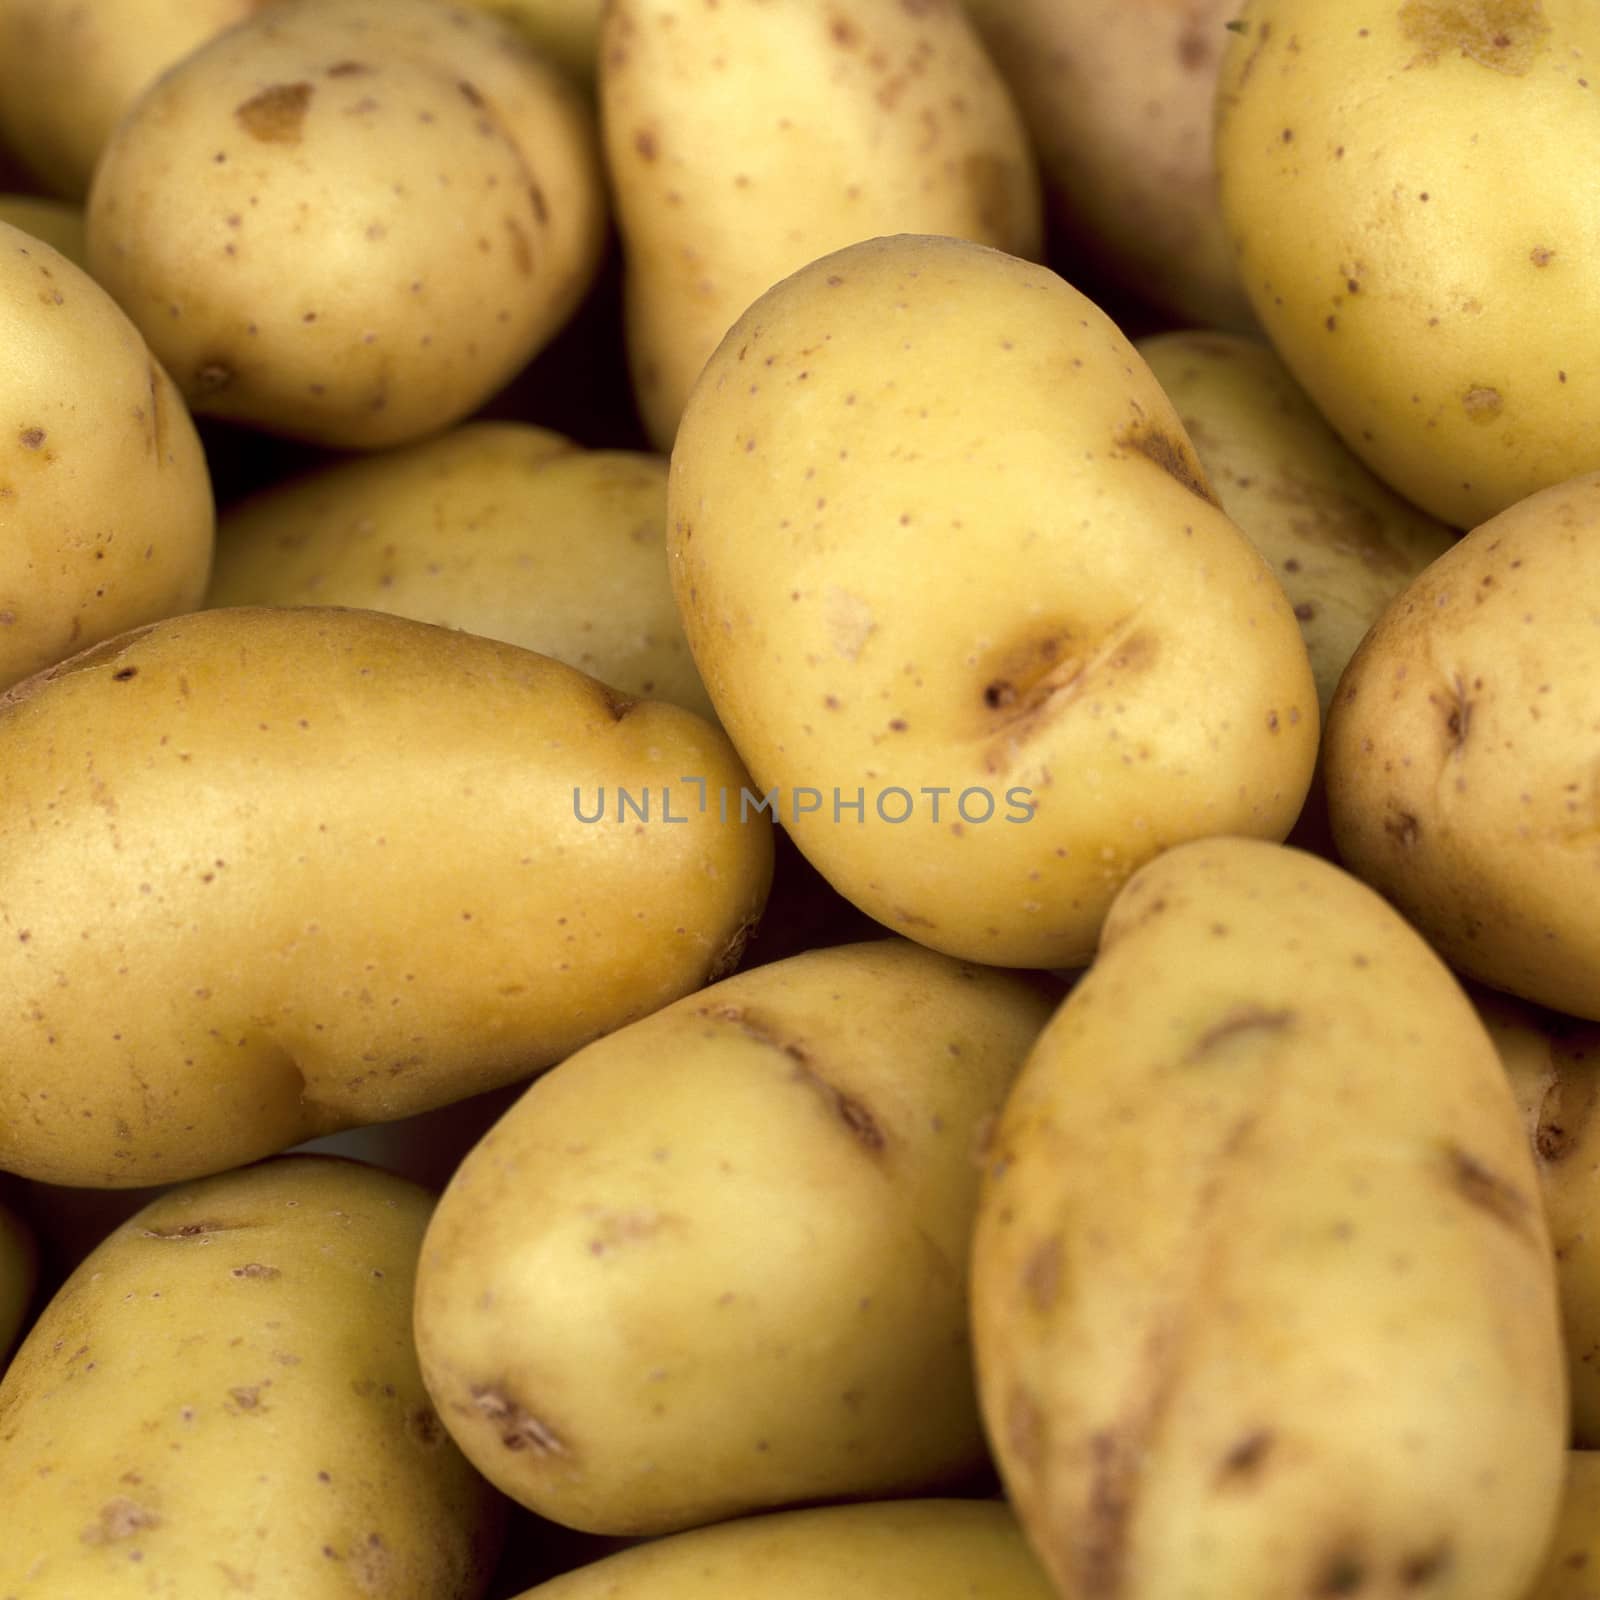 New Jersey Potatoes by Whiteboxmedia